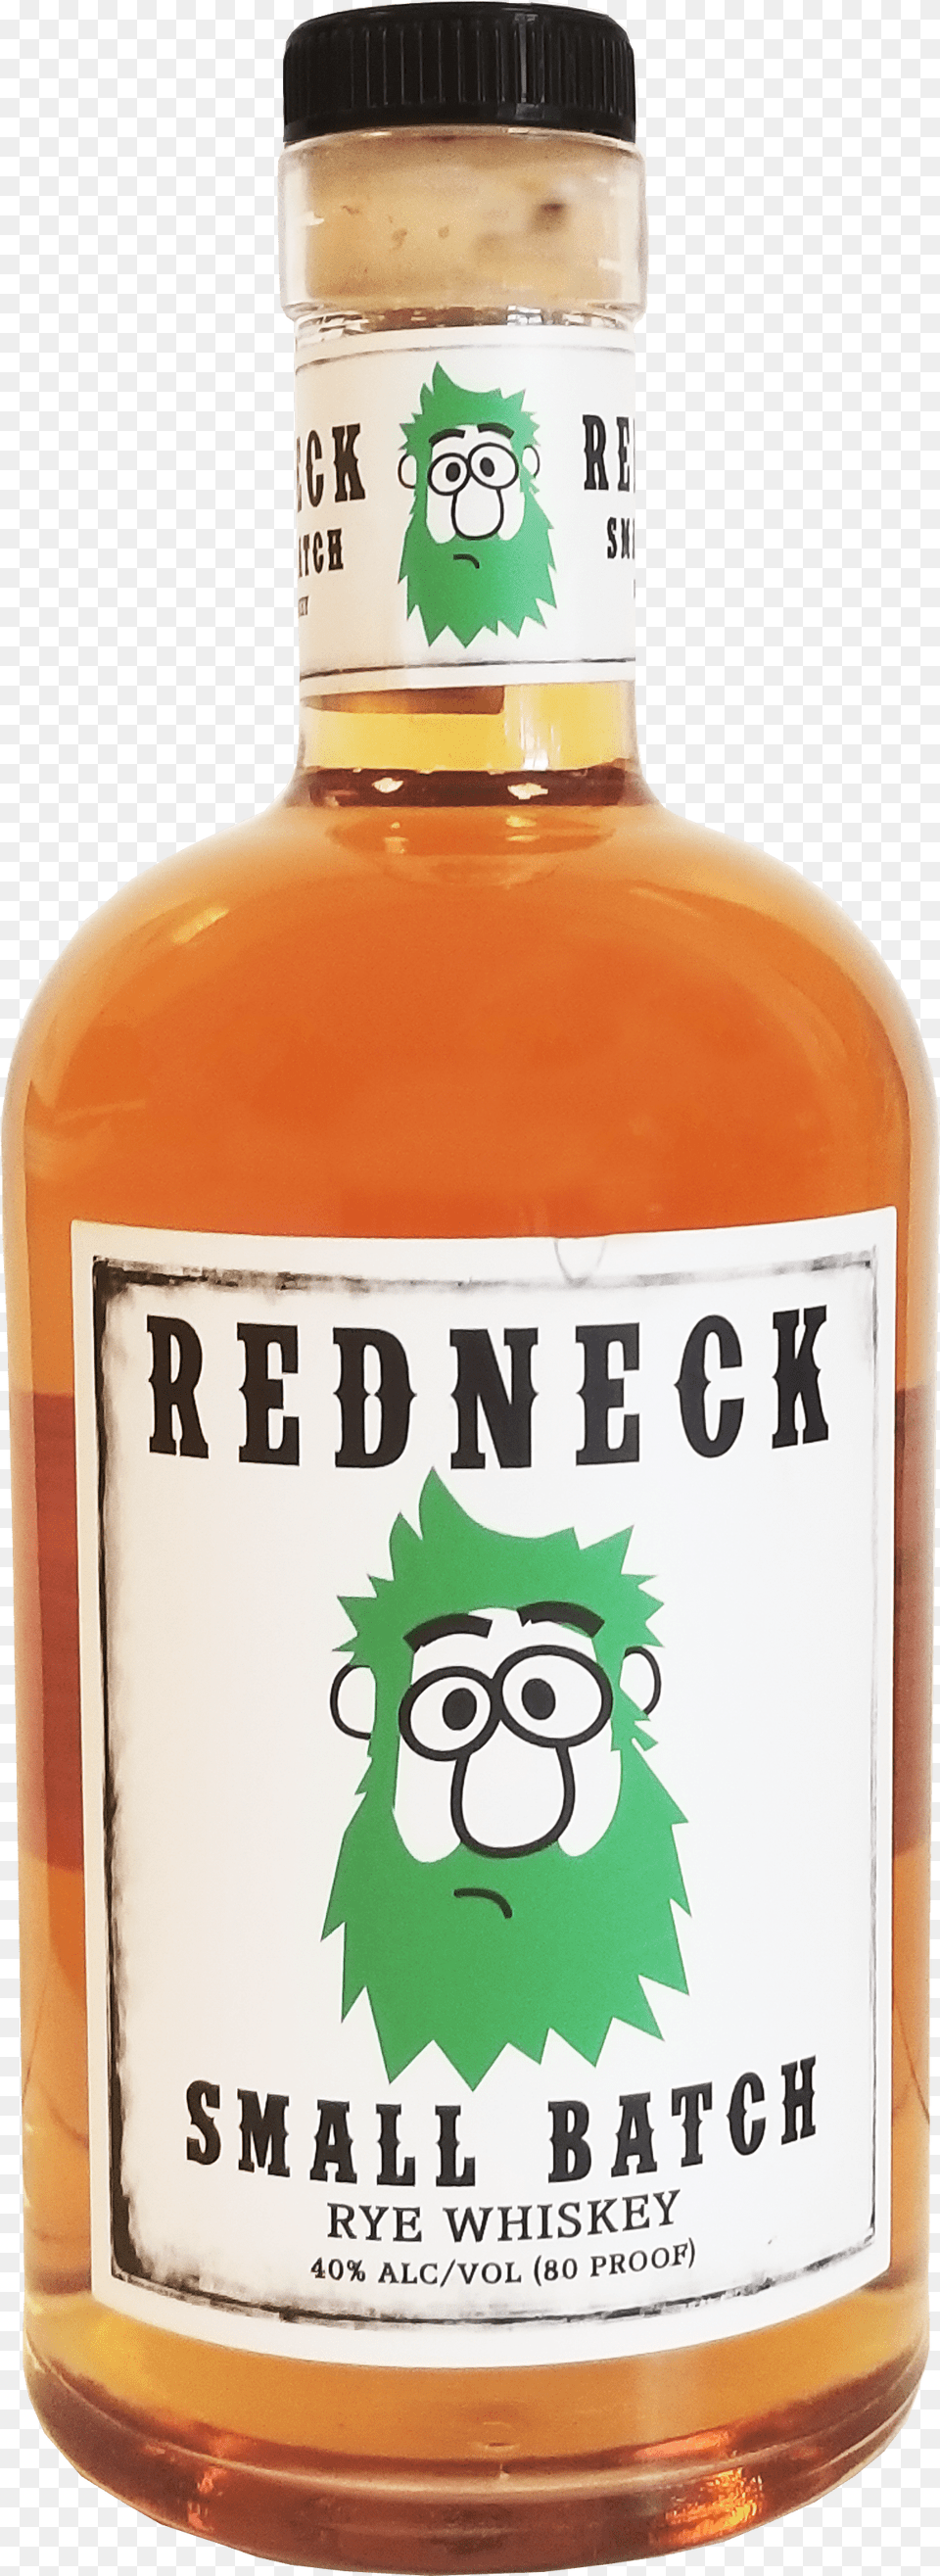 Redneck Rye Whiskey Min Glass Bottle Transparent Cartoon Line Art, Alcohol, Beverage, Liquor, Beer Free Png Download